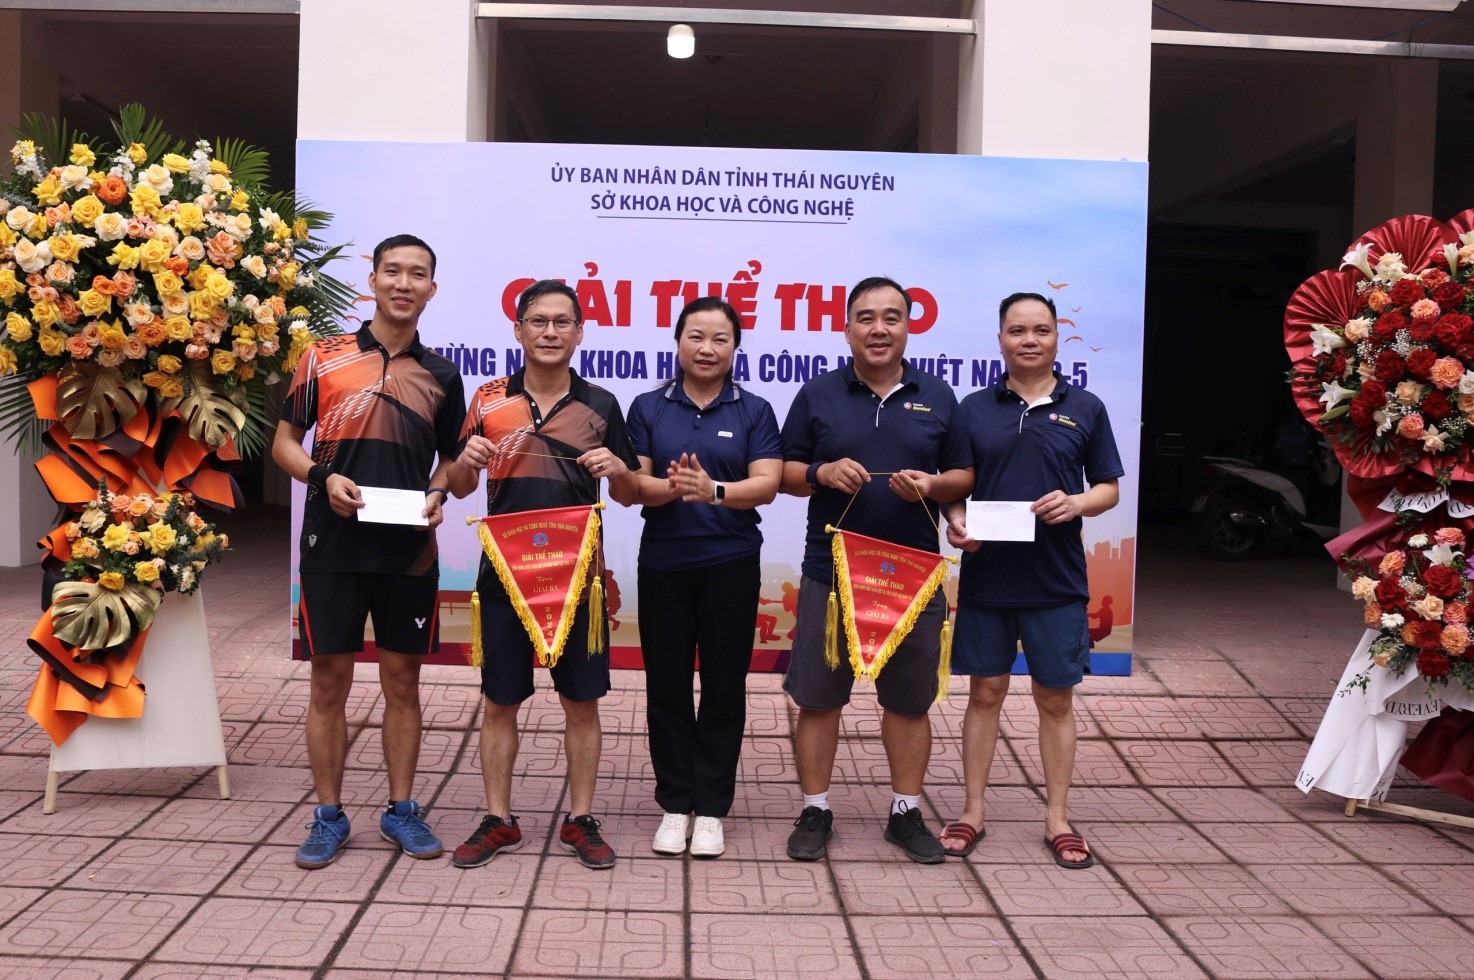 Giải thể thao chào mừng Ngày Khoa học và Công nghệ Việt Nam 18-5 -4